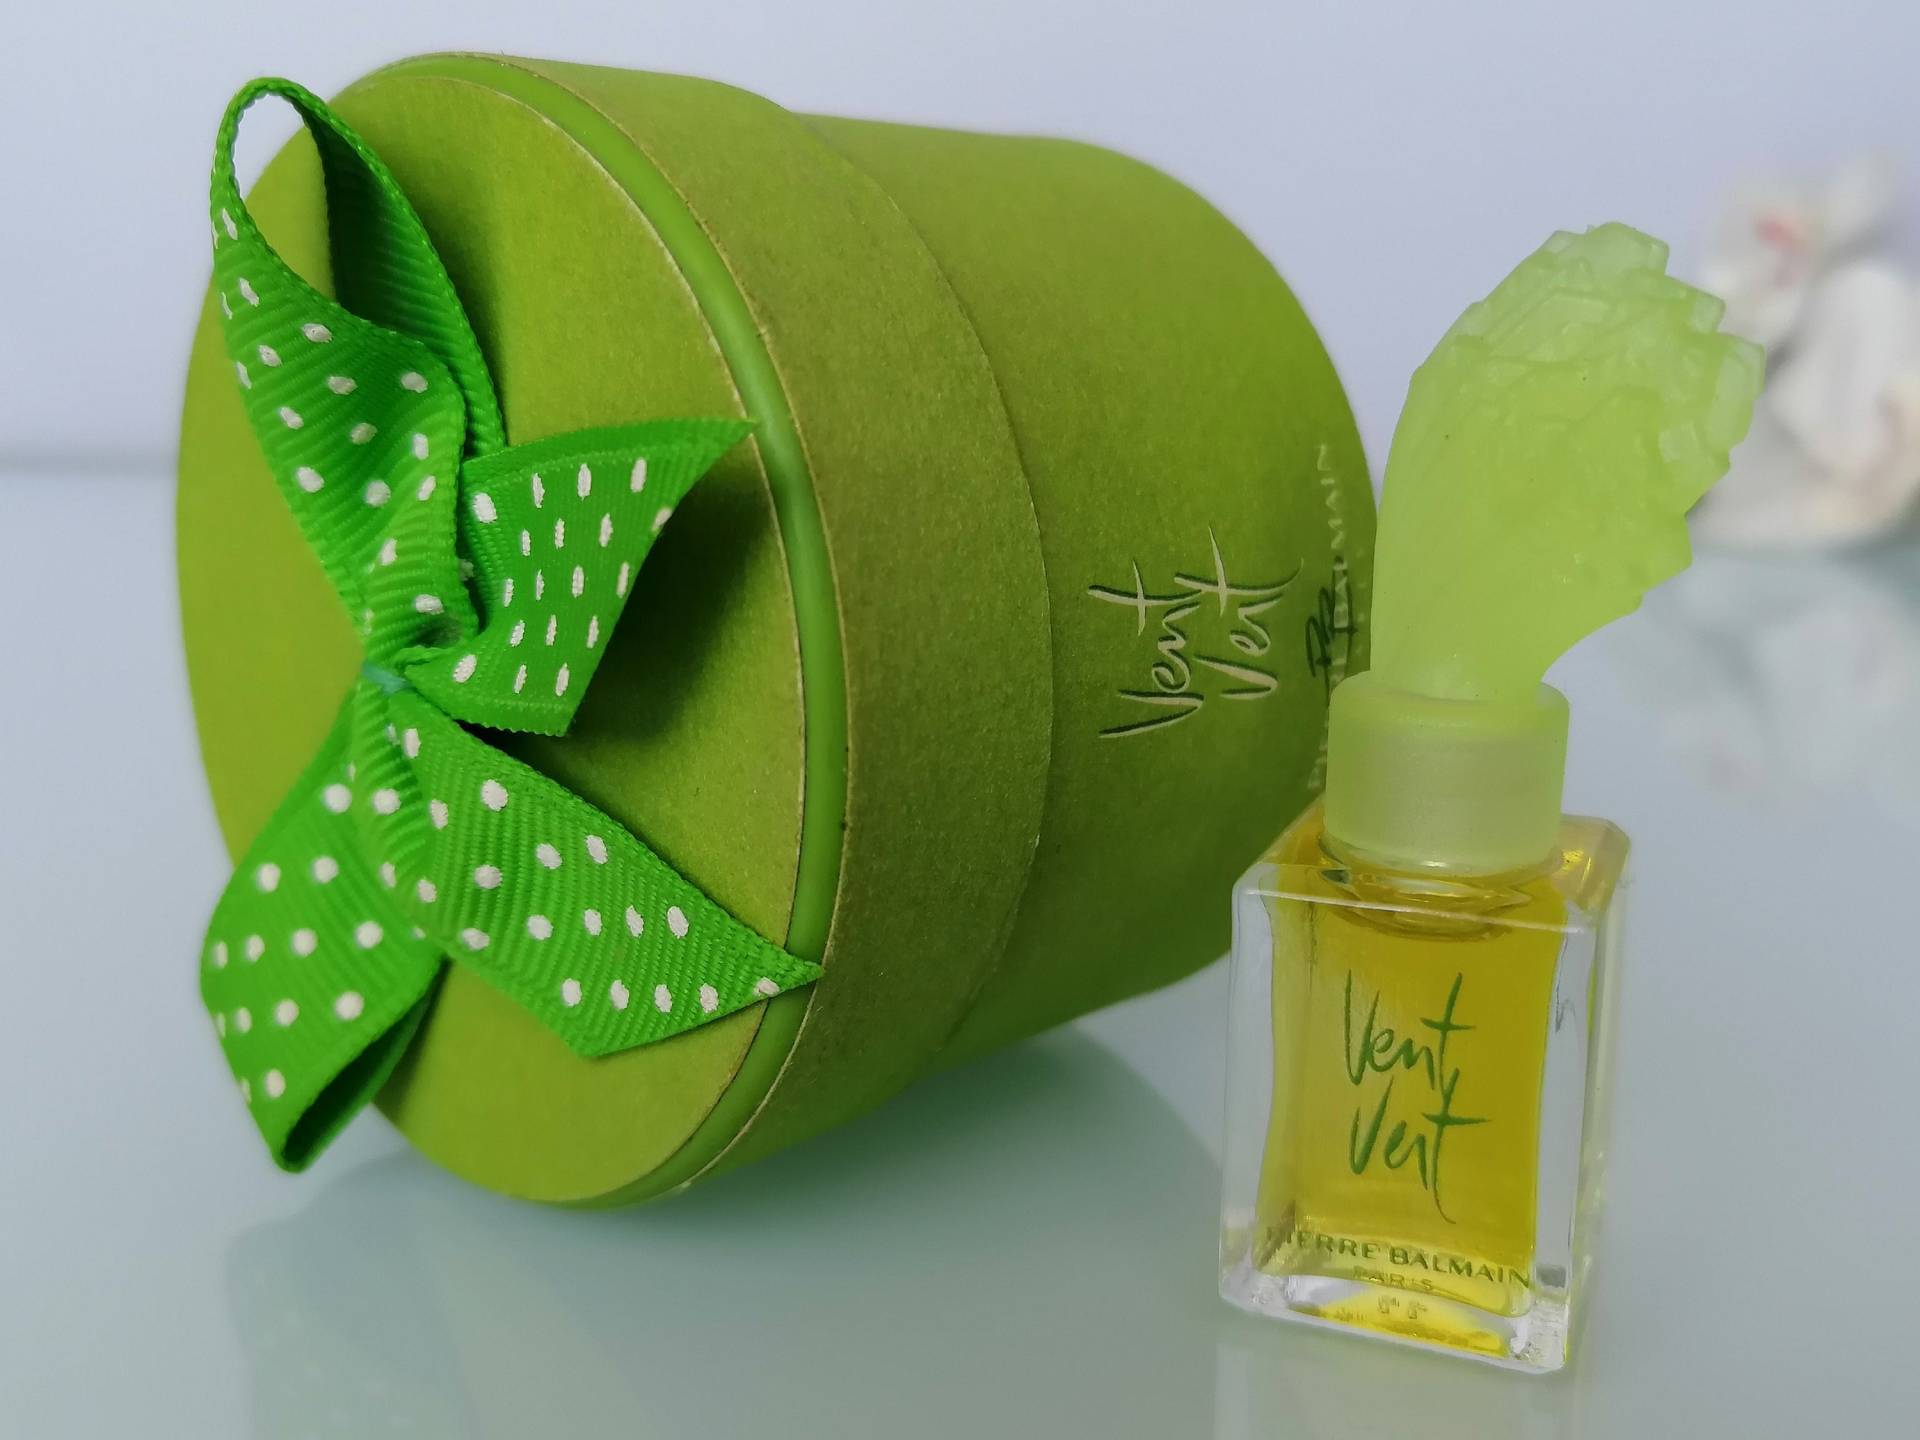 Miniature Vent Vert Balmain Parfum/Extrait 4 Ml Vintage Kleines Parfum Für Damen von Etsy - VintageItalienstyle